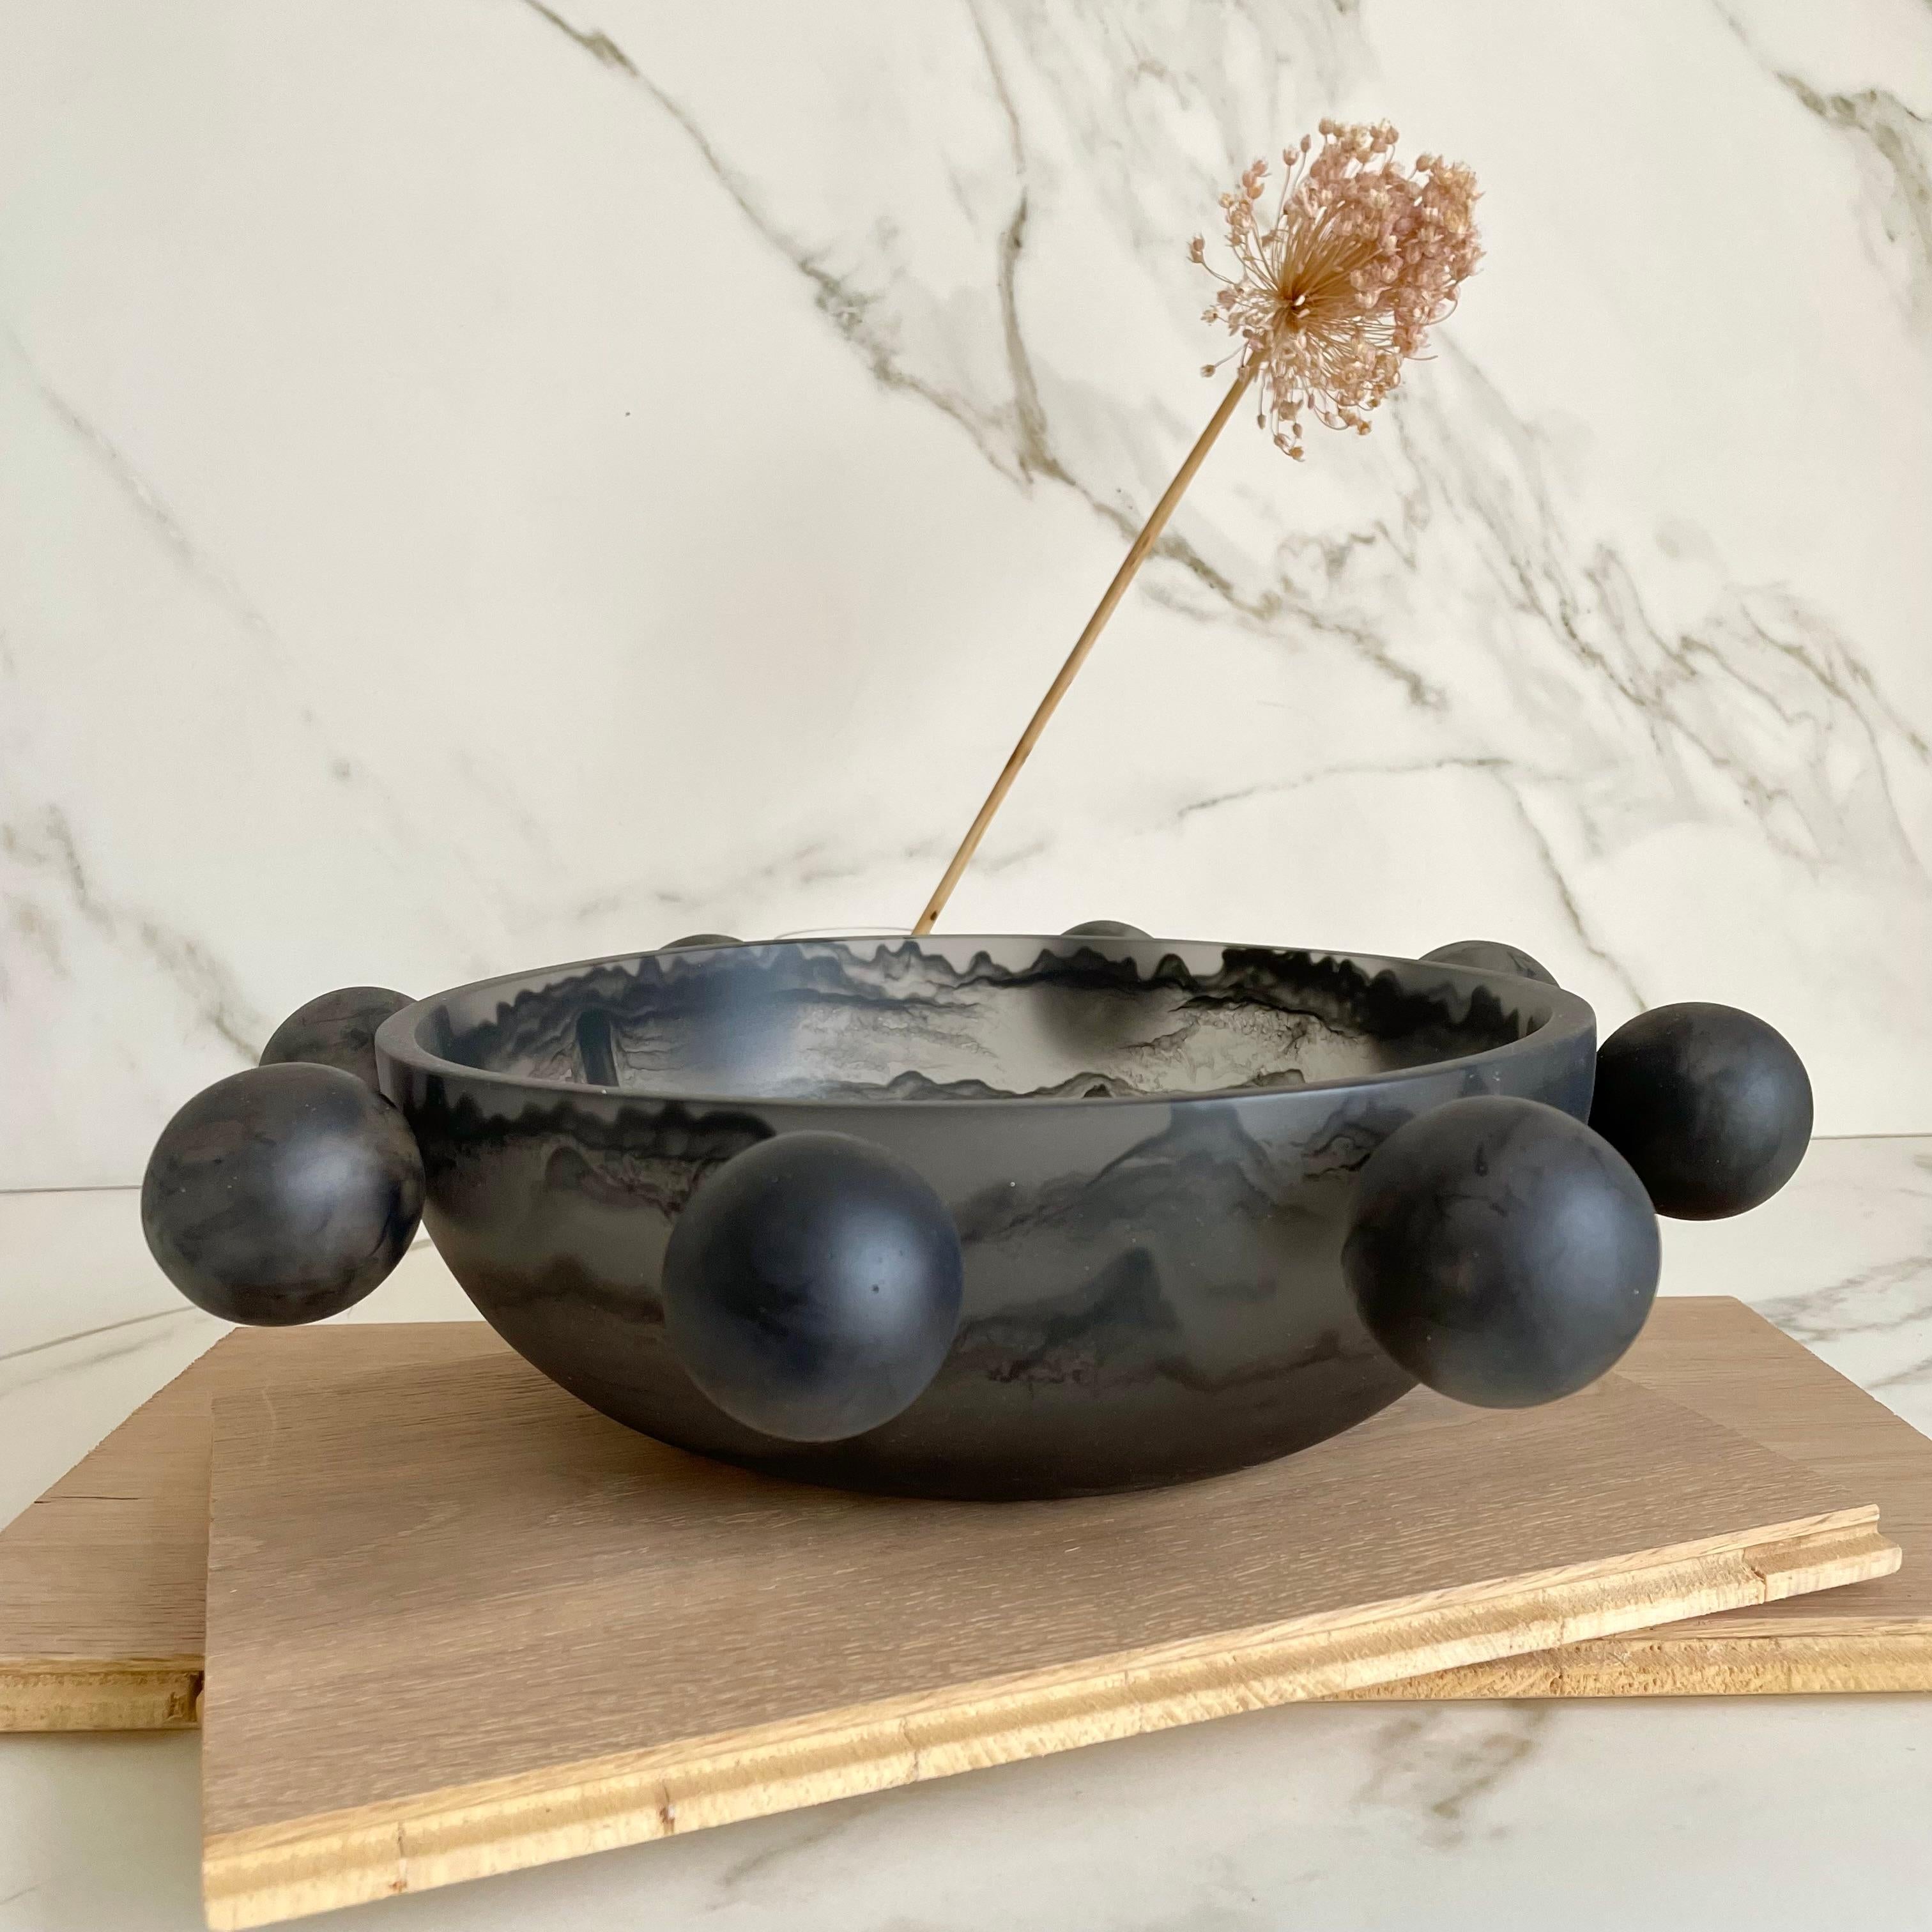 Unsere Bubble Bowl ist handgefertigt aus rauchfarbenem und schwarz marmoriertem Harz. Sein modernes, witziges und einzigartiges Design macht ihn zu einem Blickfang und kann als Dekoration oder als Obstteller verwendet werden.

Entworfen von Paola